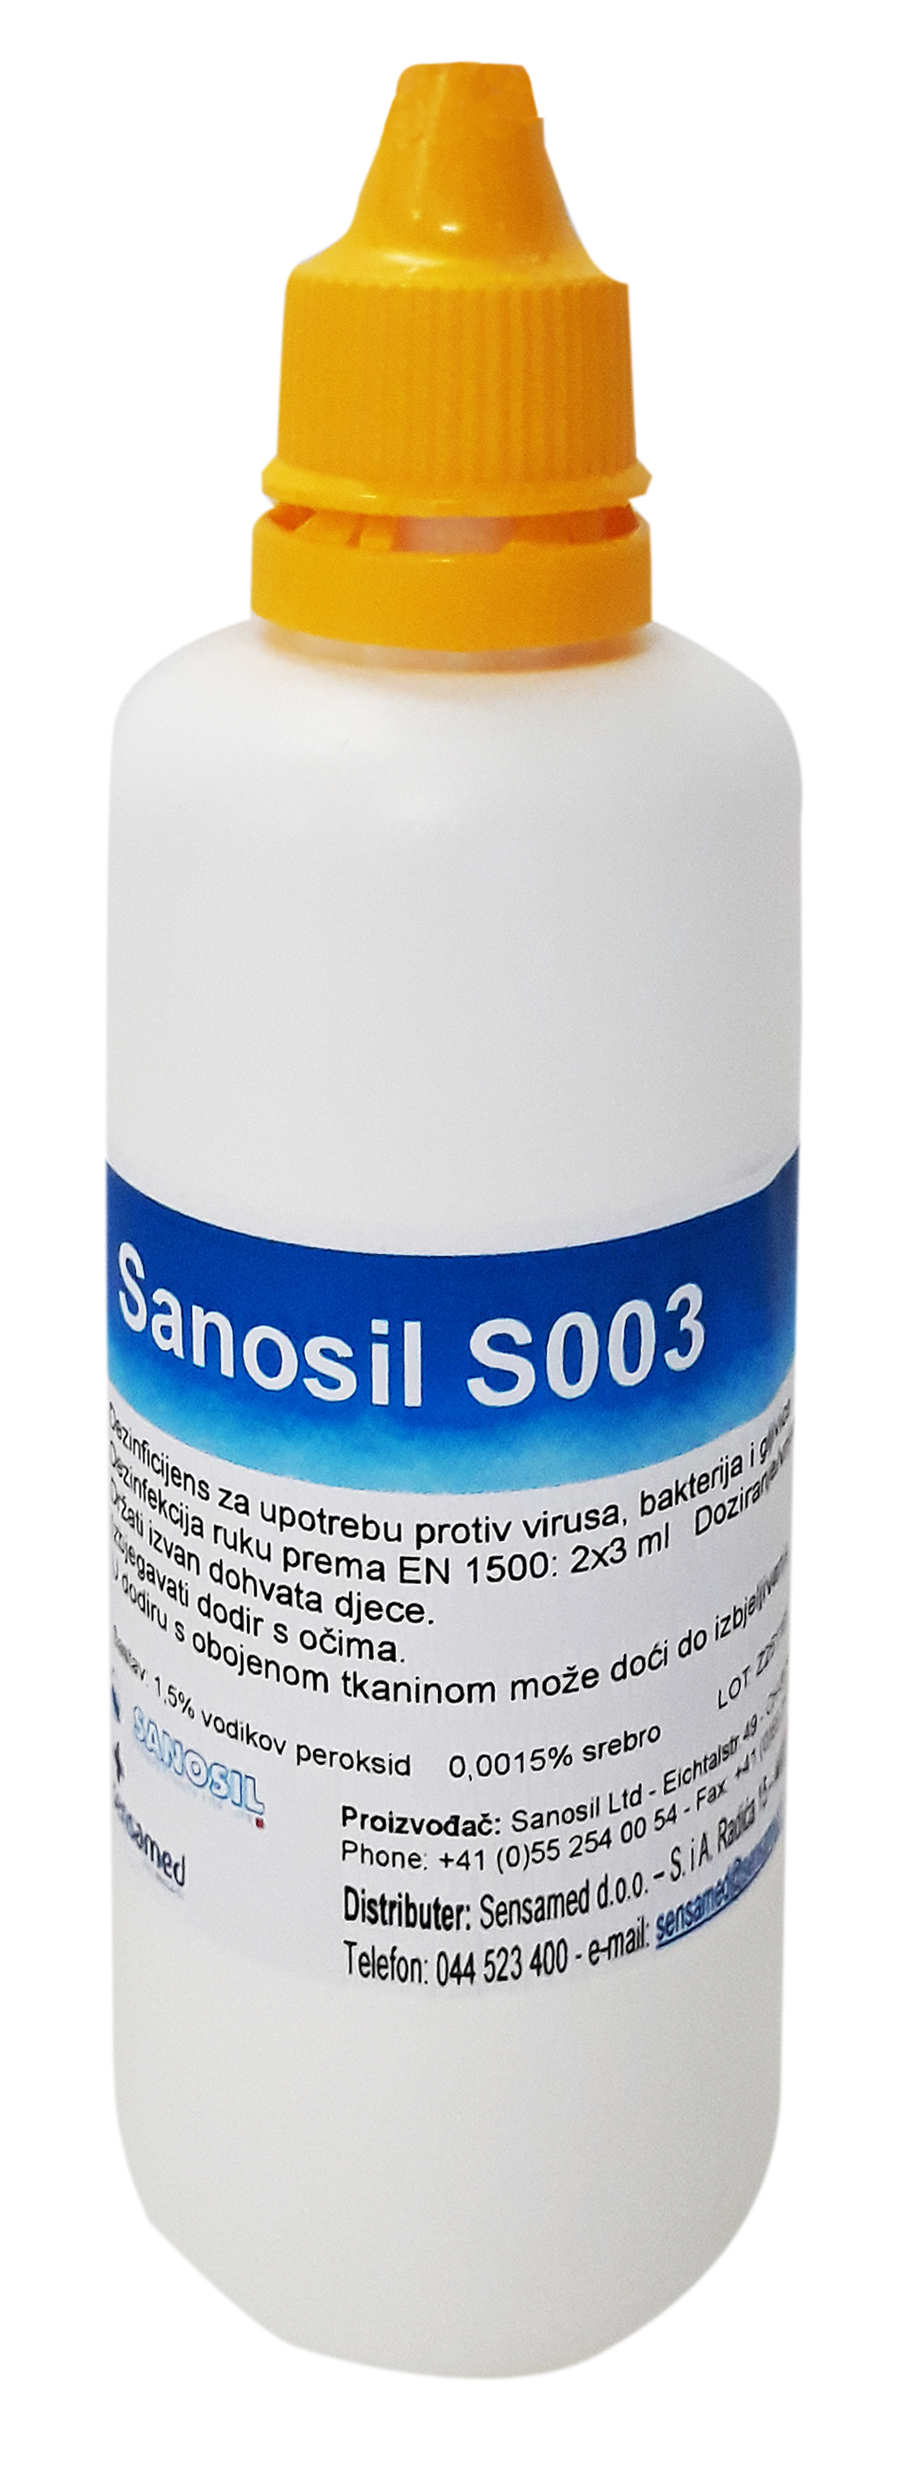 Sanosil S003 sredstvo za dezinfekciju površina i ruku - pakovanje 100 ml